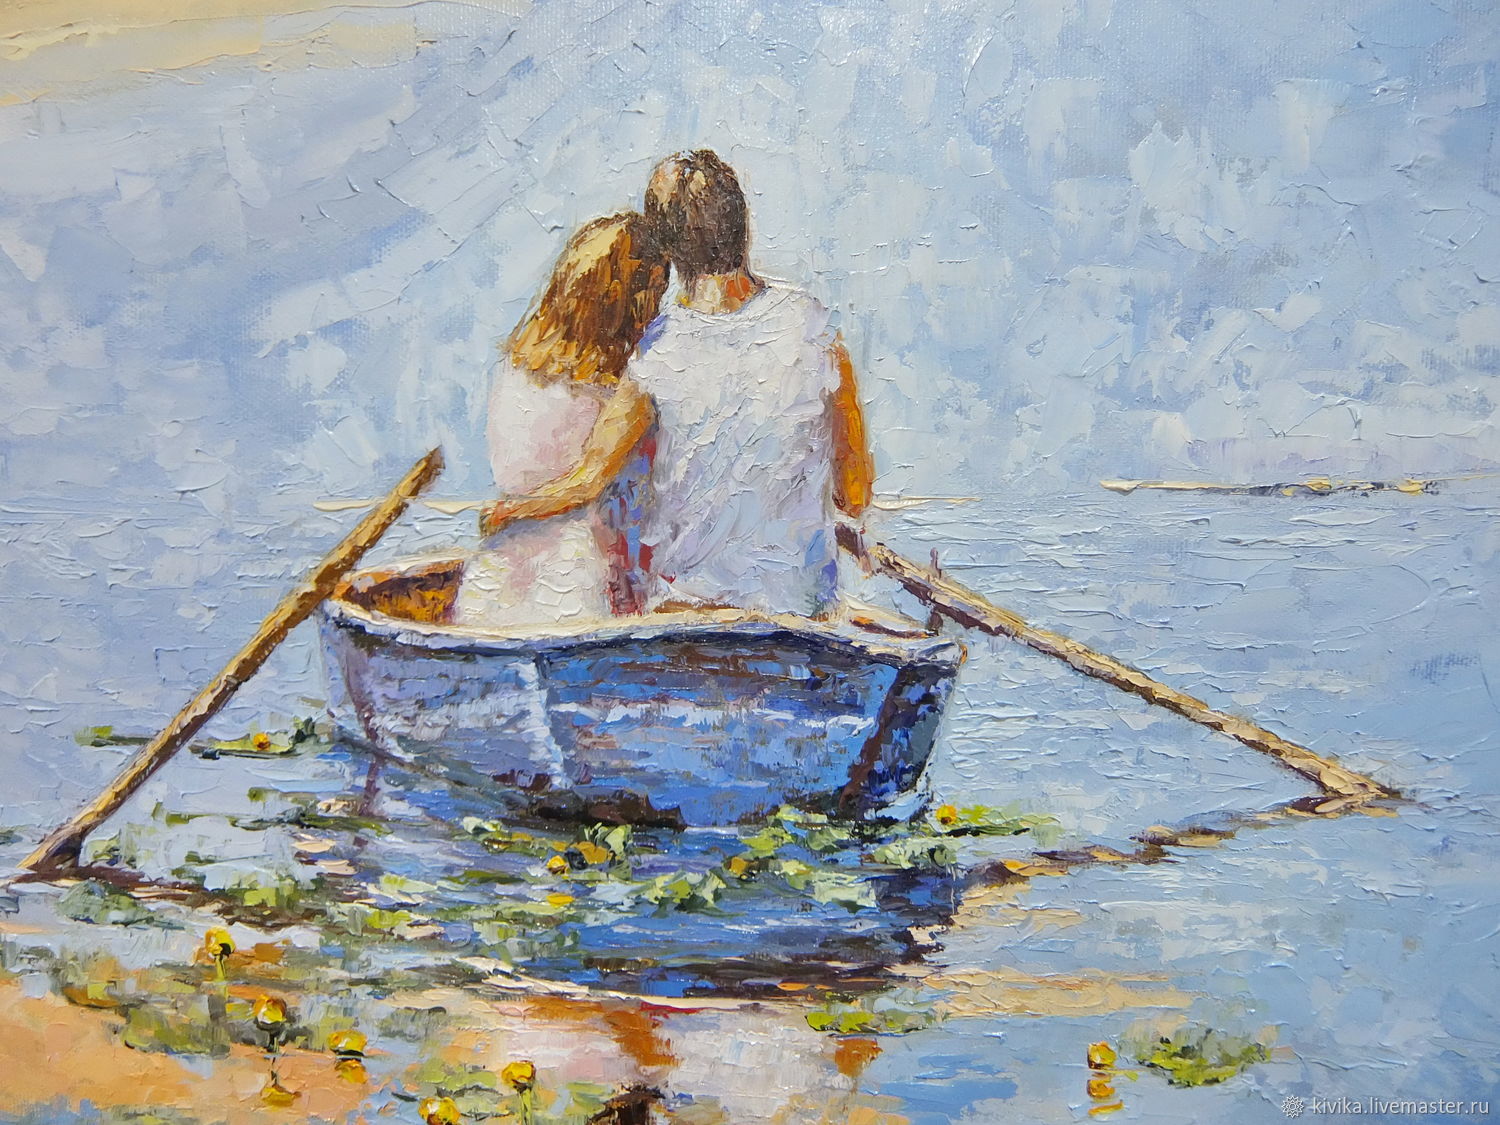 мы с женой на озере